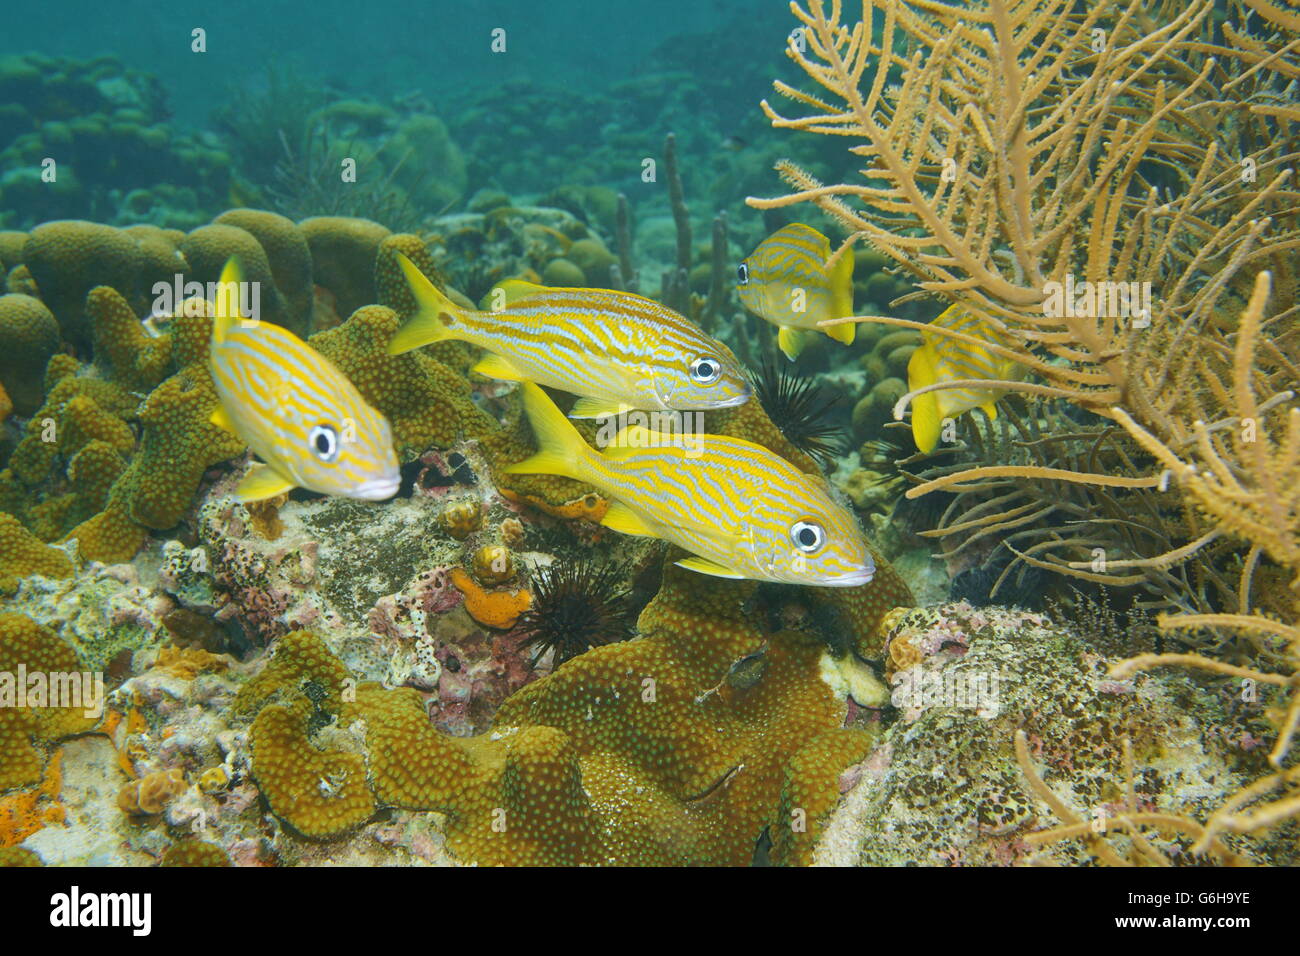 Pesci tropicali grunt francese, Haemulon flavolineatum, subacquea in una barriera corallina del Mar dei Caraibi Foto Stock